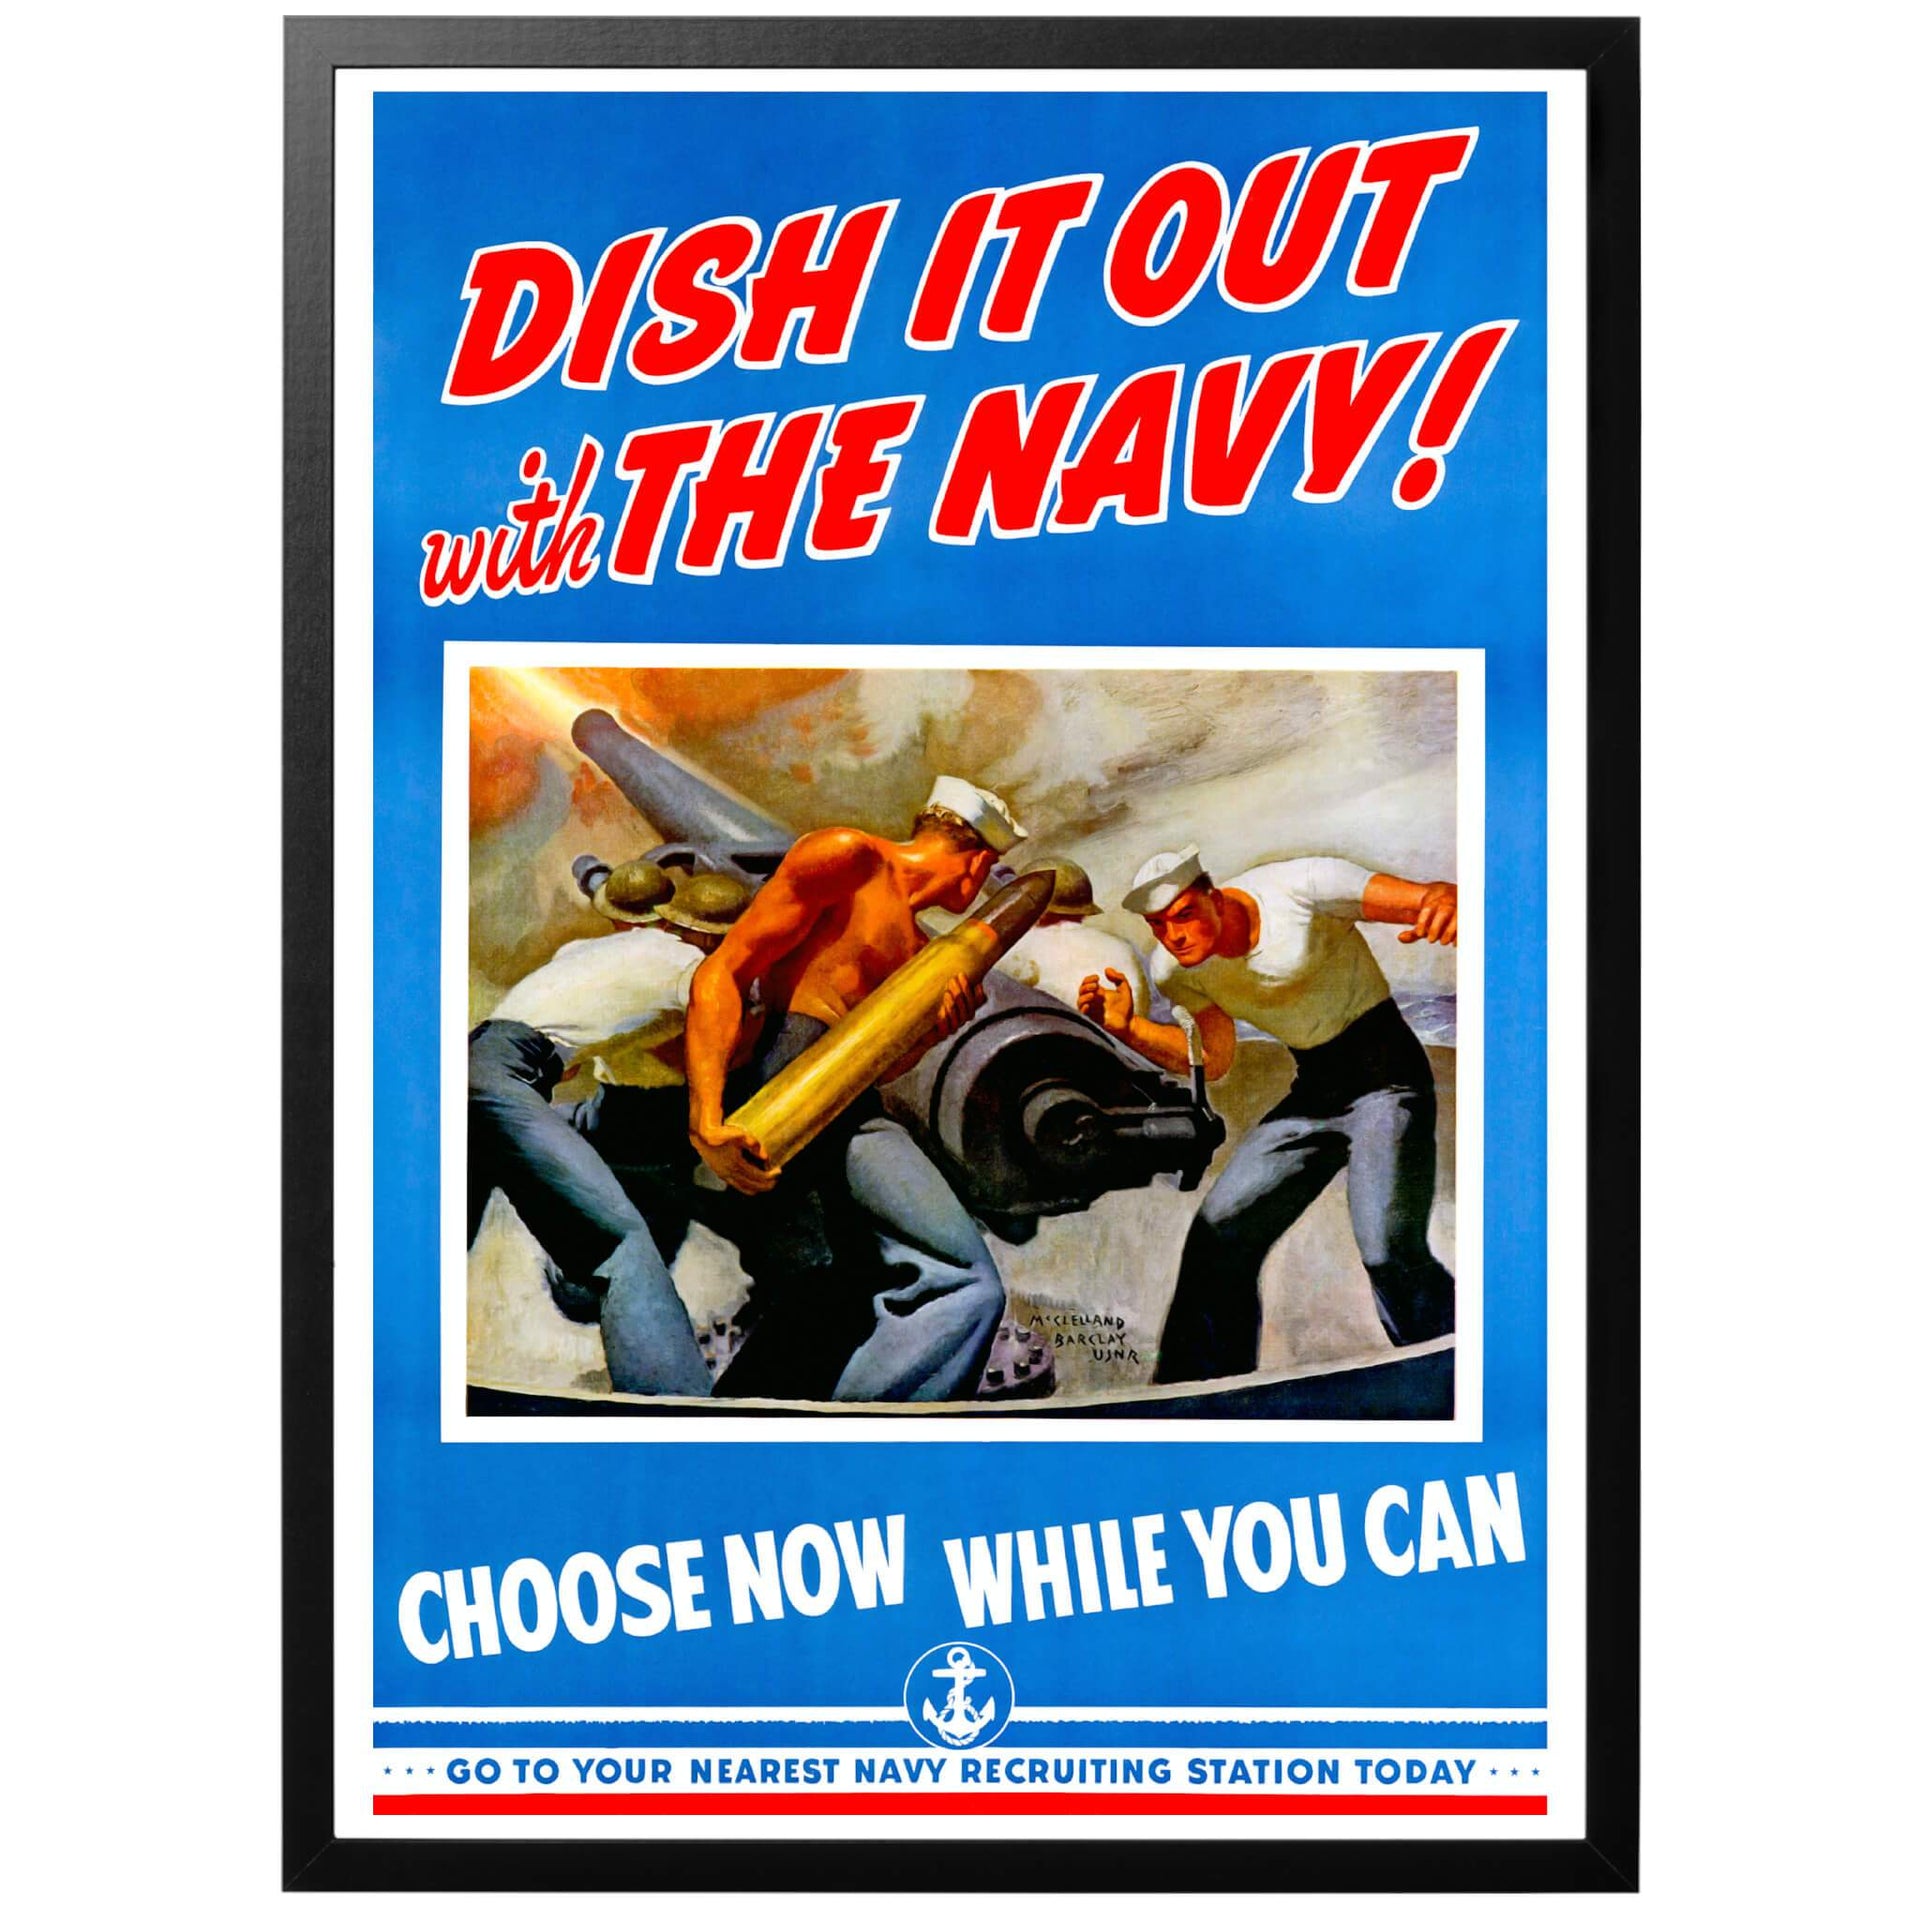 Dish it out with the Navy! - Choose now while you can - Go to your nearest Navy recruting station today  Strid i flottan - välj nu medan du kan - gå till din närmsta flottbas för rekrytering idag. Amerikansk WWII affisch för flottan, skapad 1942. 